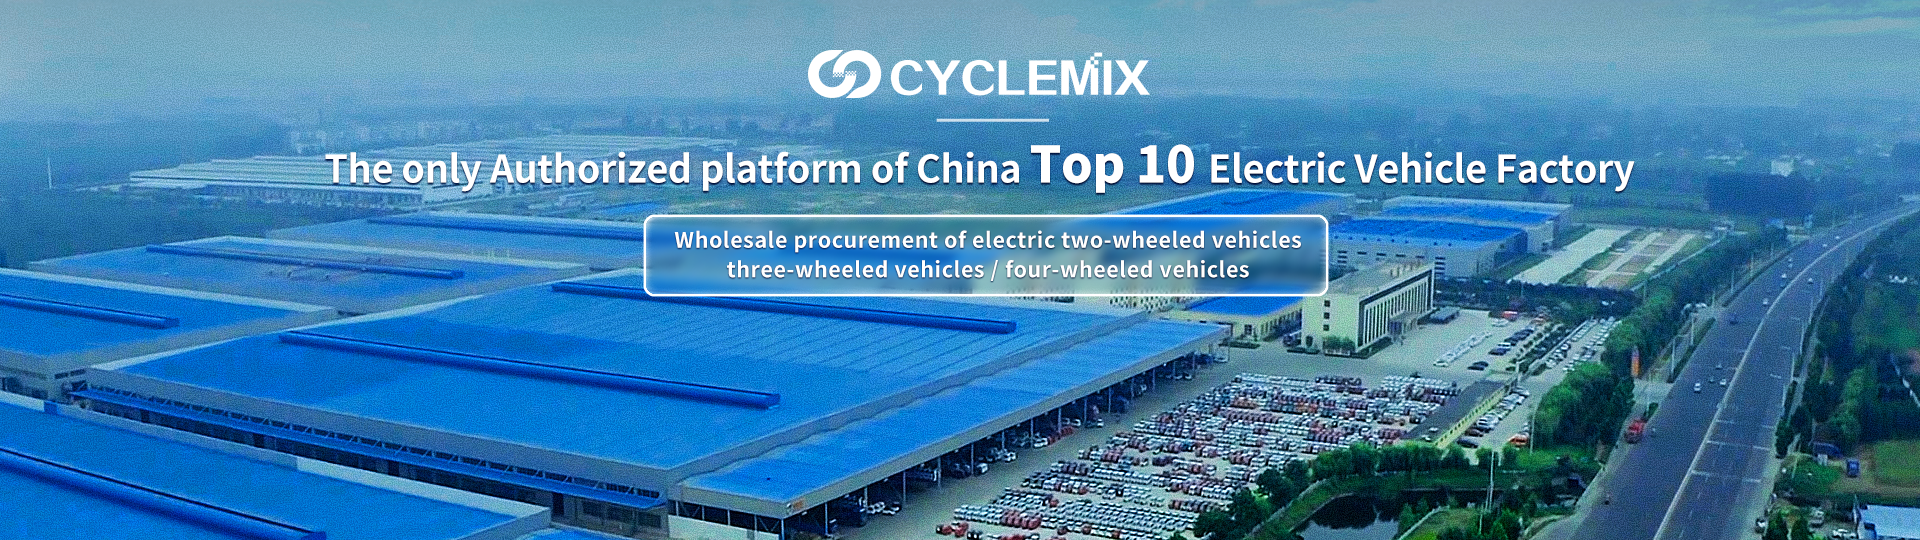 CYCLEMIX الطرف/المنصة الوحيدة المعتمدة لأفضل 10 مصانع للسيارات الكهربائية في الصين